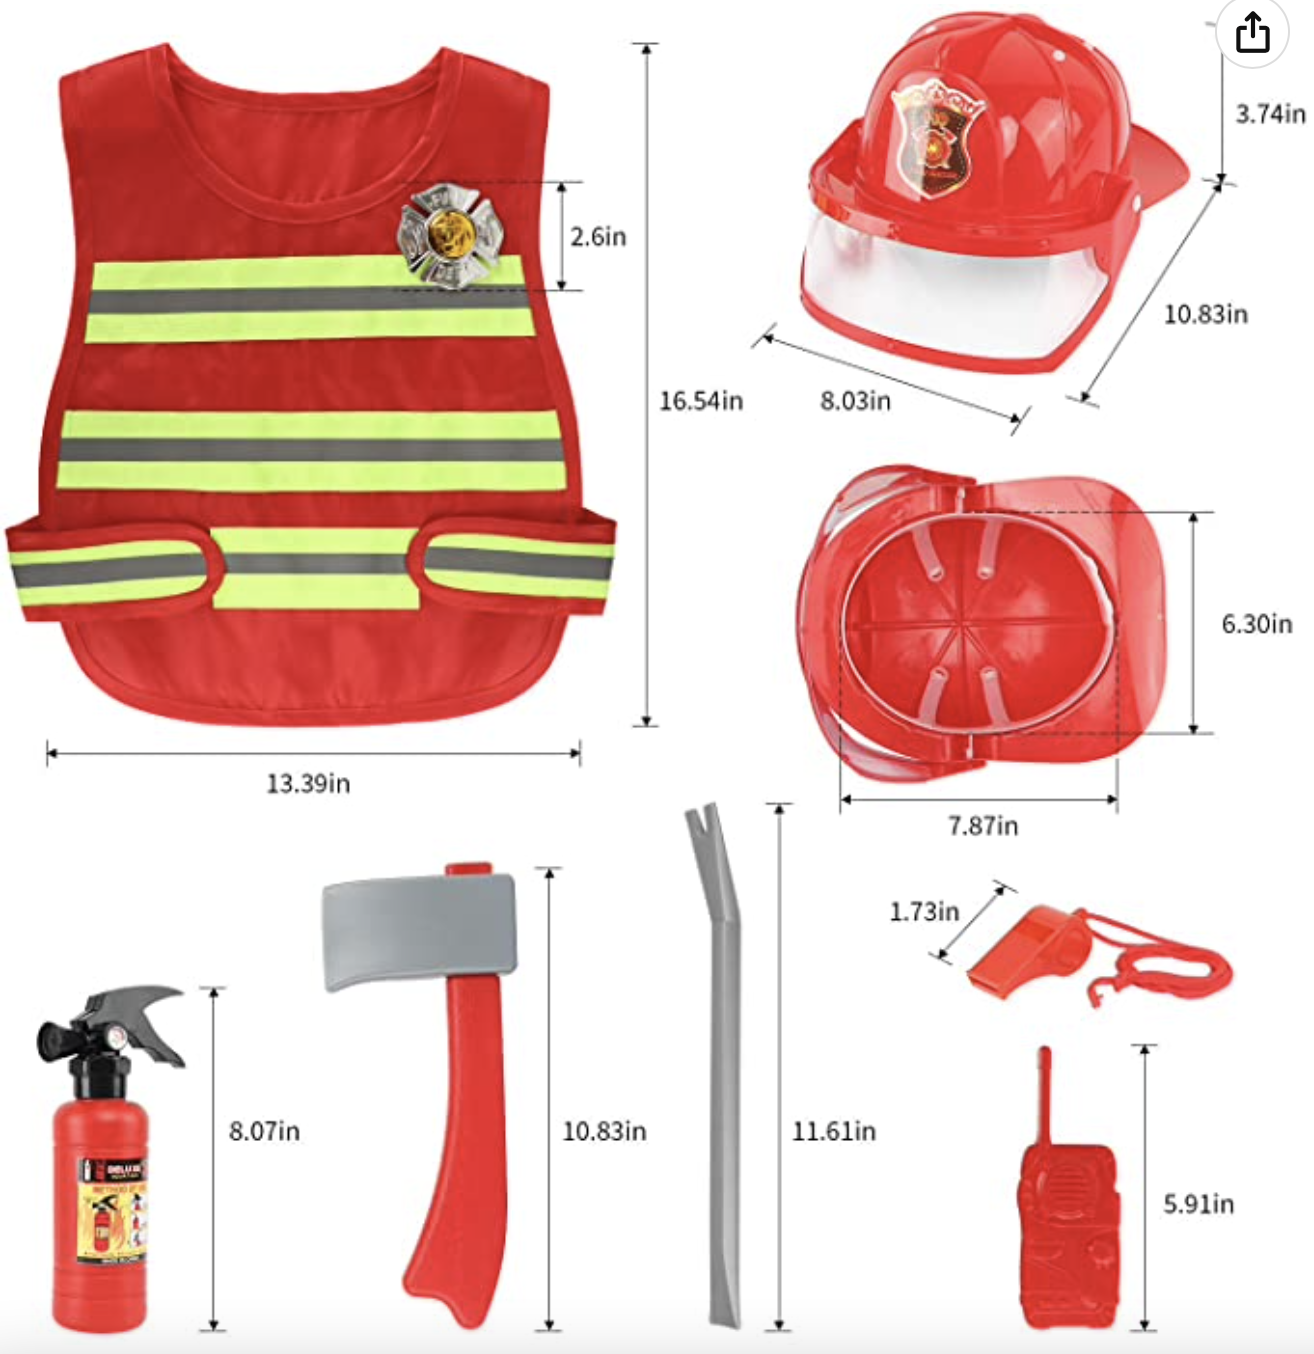 Las mejores ofertas en Policía y bombero Disfraz De Plástico Cascos